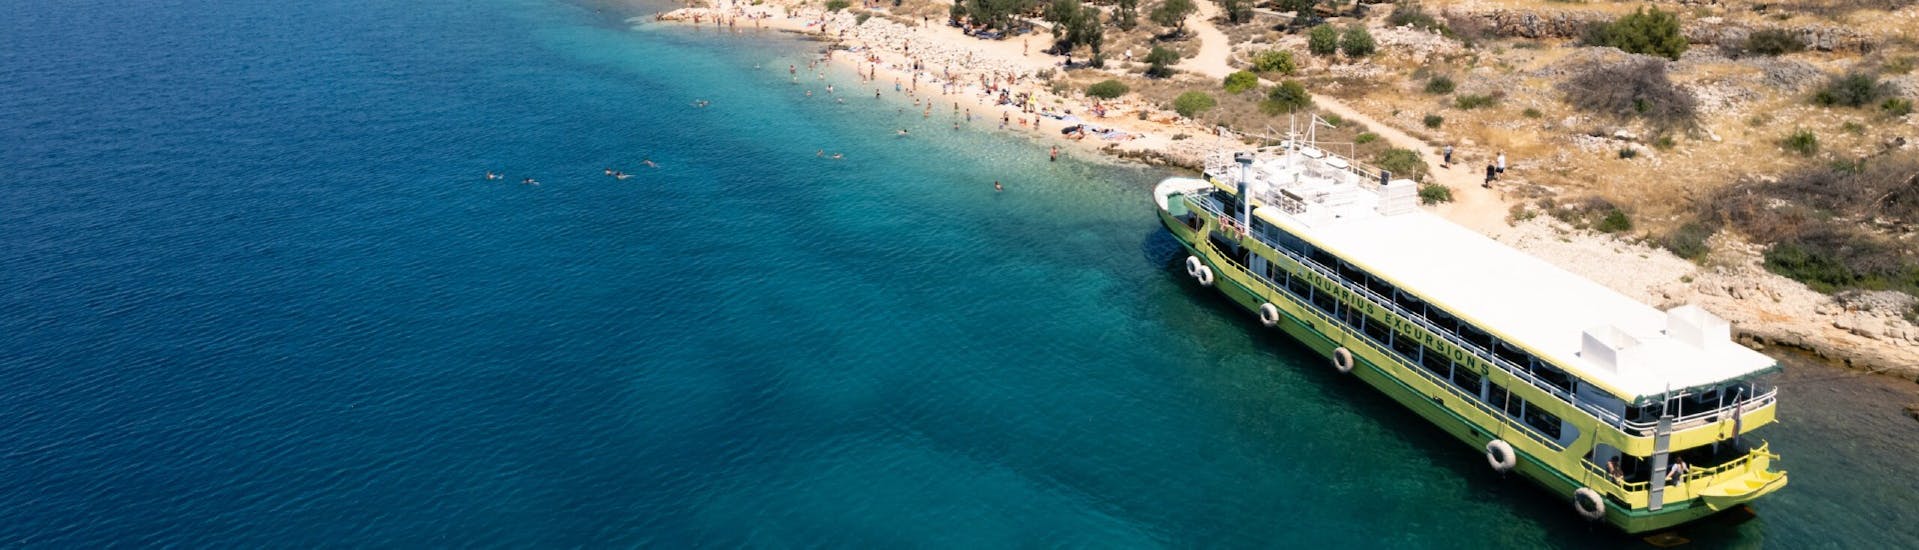 El barco de Aquarius Excursions Zadar frente a una playa durante su excursión.